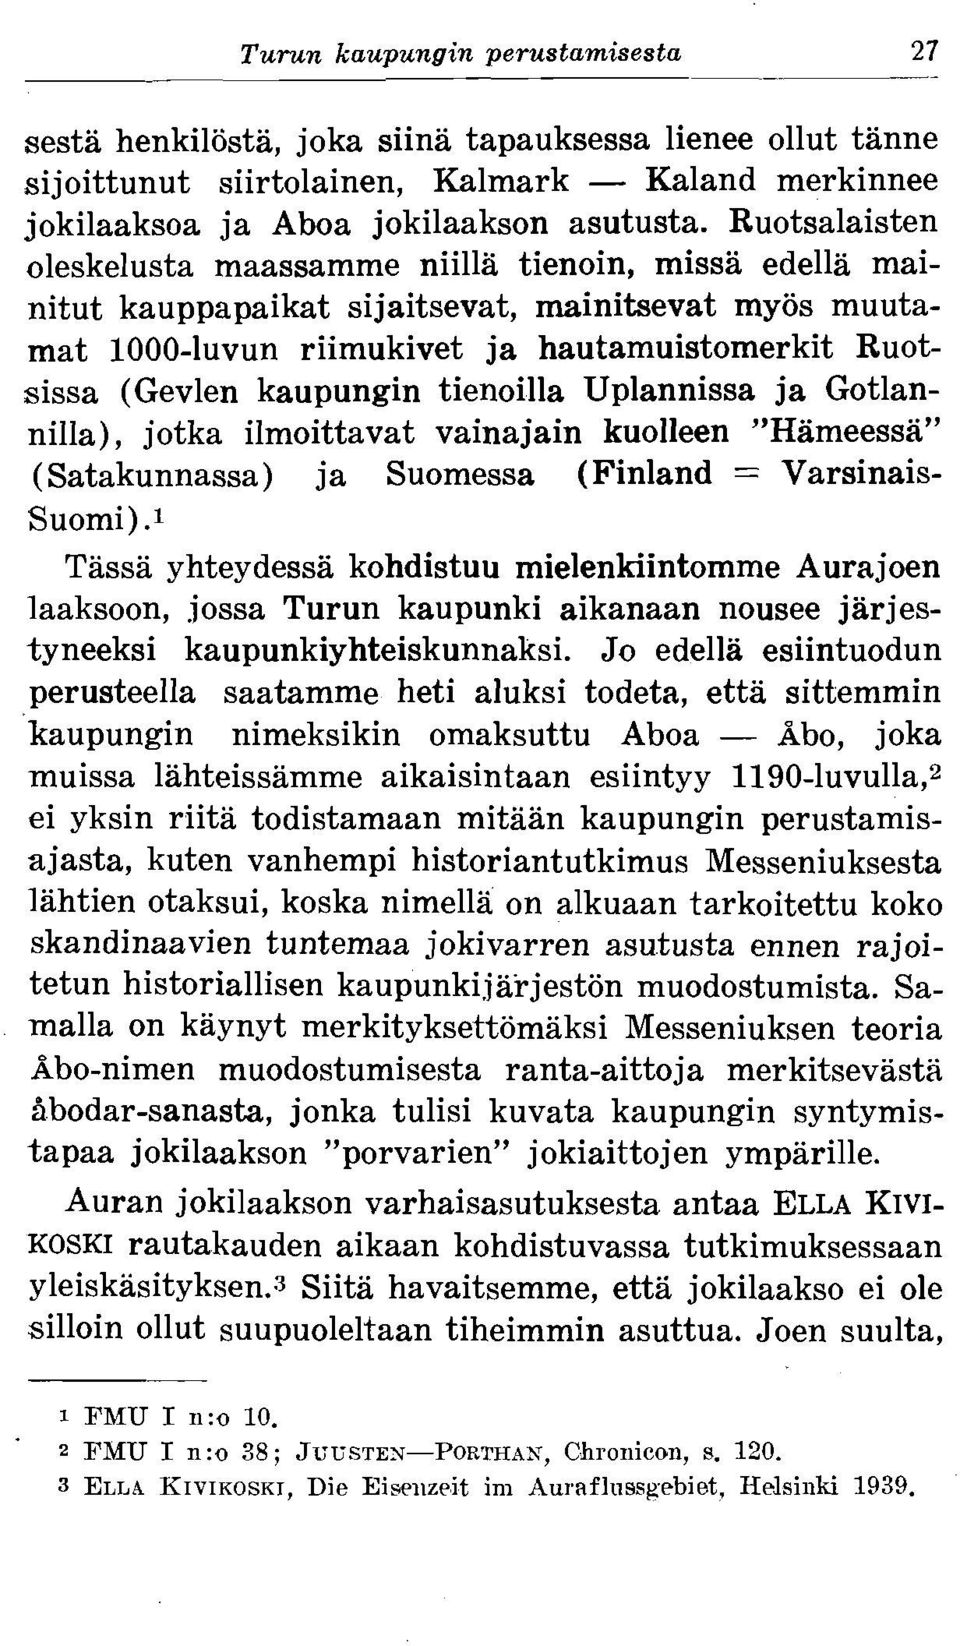 tienoilla Uplannissa ja Gotlannilla), jotka ilmoittavat vainajain kuolleen "Hameessa" (Satakunnassa) ja Suomessa (Finland = Varsinais- Suomi).